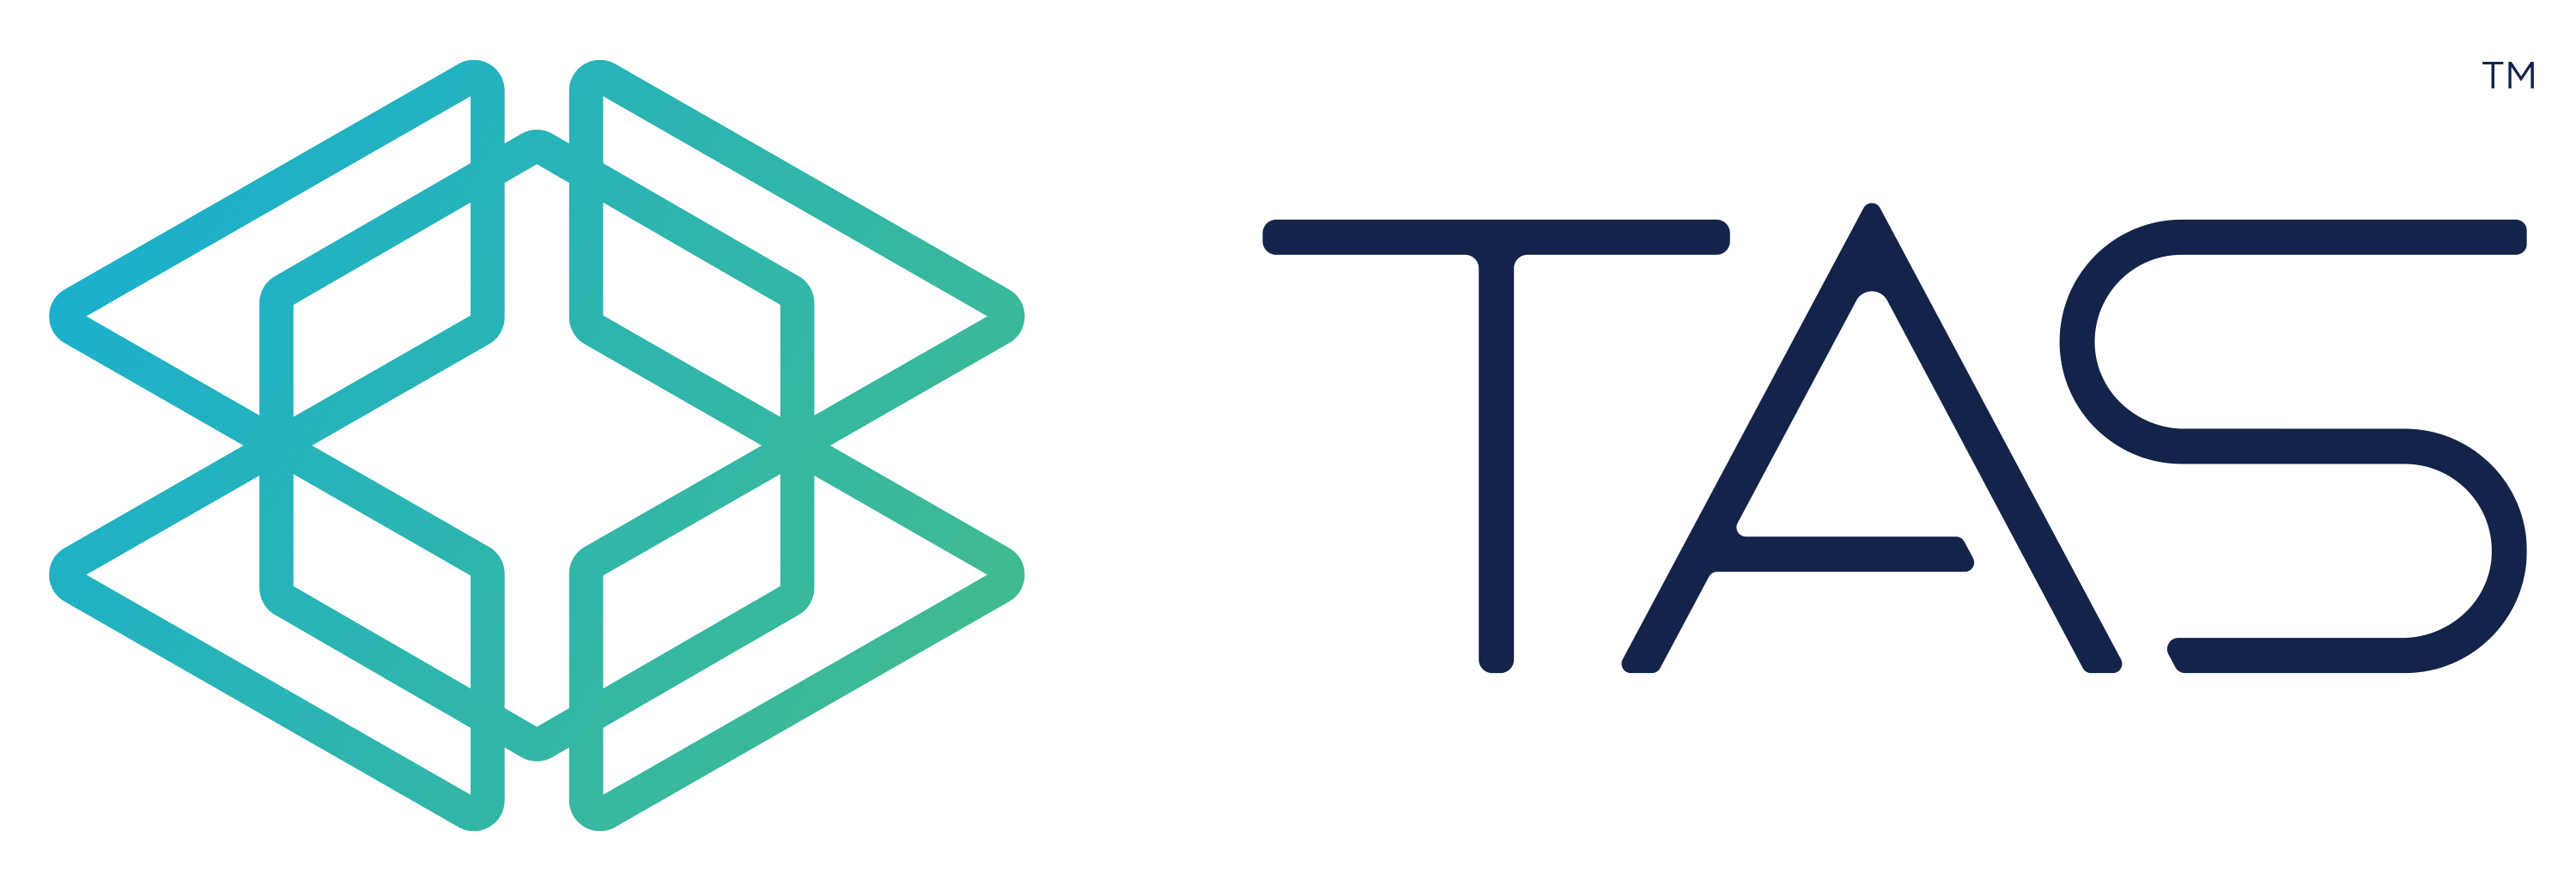 2.3 TAS logo